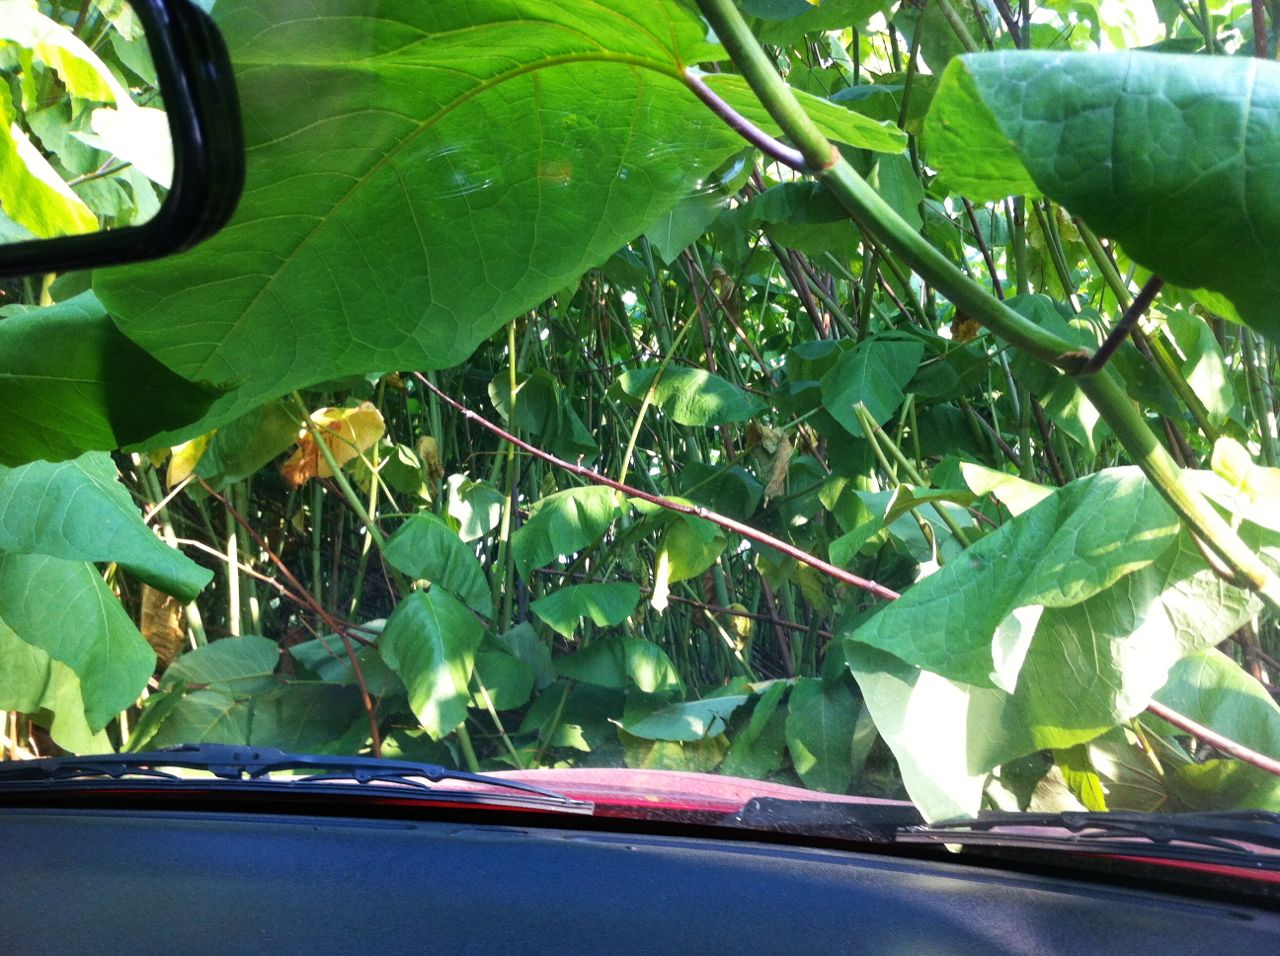 Med bilen i en "djungel"